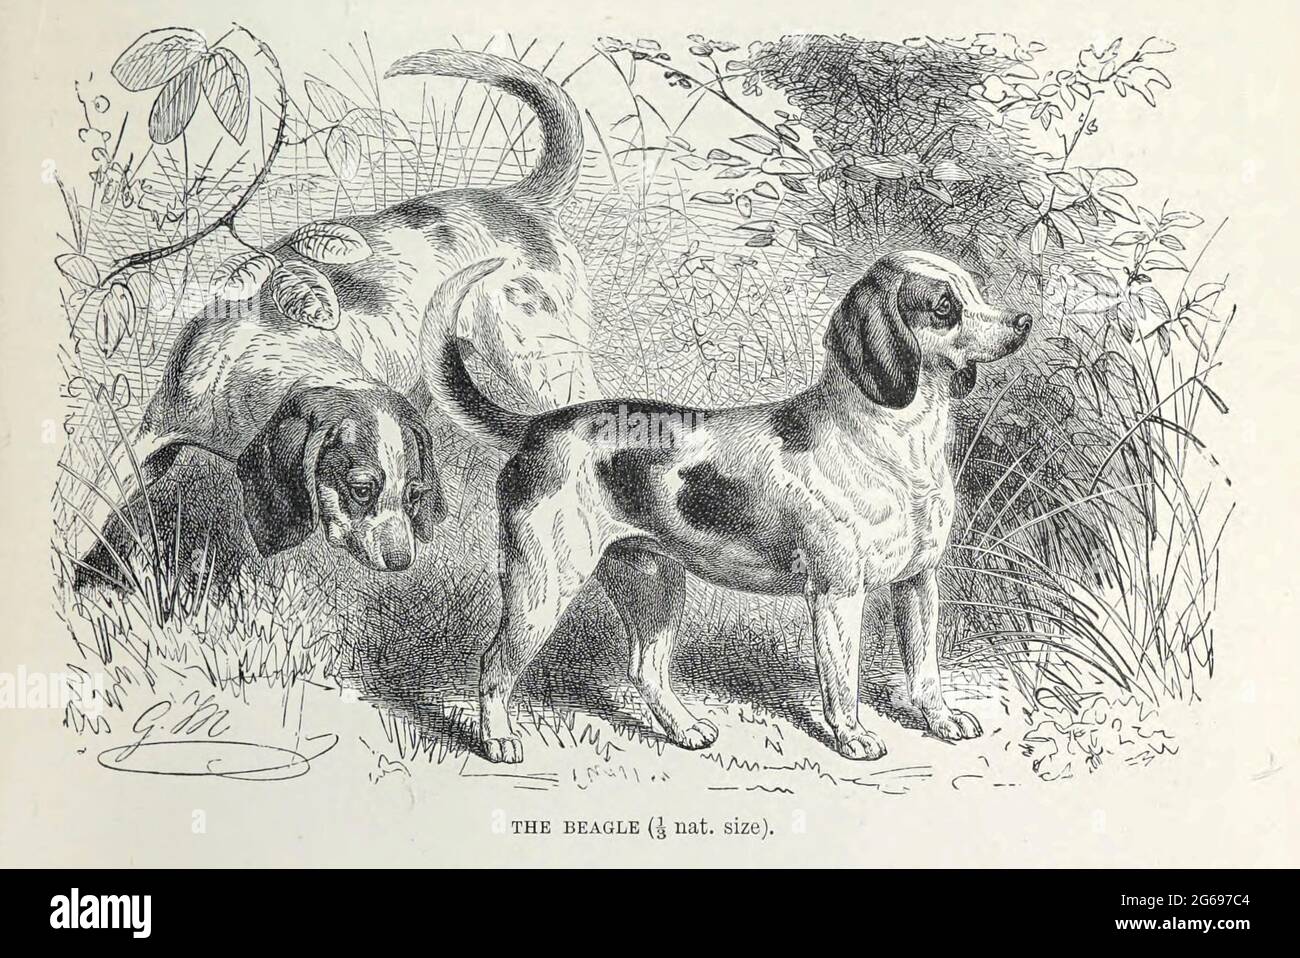 Der Beagle der Beagle wurde vor allem für die Jagd auf Hasen (Beagling) entwickelt. Der Beagle besitzt einen großen Geruchssinn und hervorragende Spurstinkte und ist die primäre Rasse, die als Nachweishund für verbotene landwirtschaftliche Importe und Lebensmittel in Quarantäne auf der ganzen Welt verwendet wird. Der Beagle ist intelligent. Es ist ein beliebtes Haustier aufgrund seiner Größe, guten Temperament, und ein Mangel an vererbten Gesundheitsprobleme. Aus dem Buch ' Royal Natural History ' Band 1 Abschnitt II herausgegeben von Richard Lydekker, herausgegeben in London von Frederick Warne & Co im Jahr 1893-1894 Stockfoto